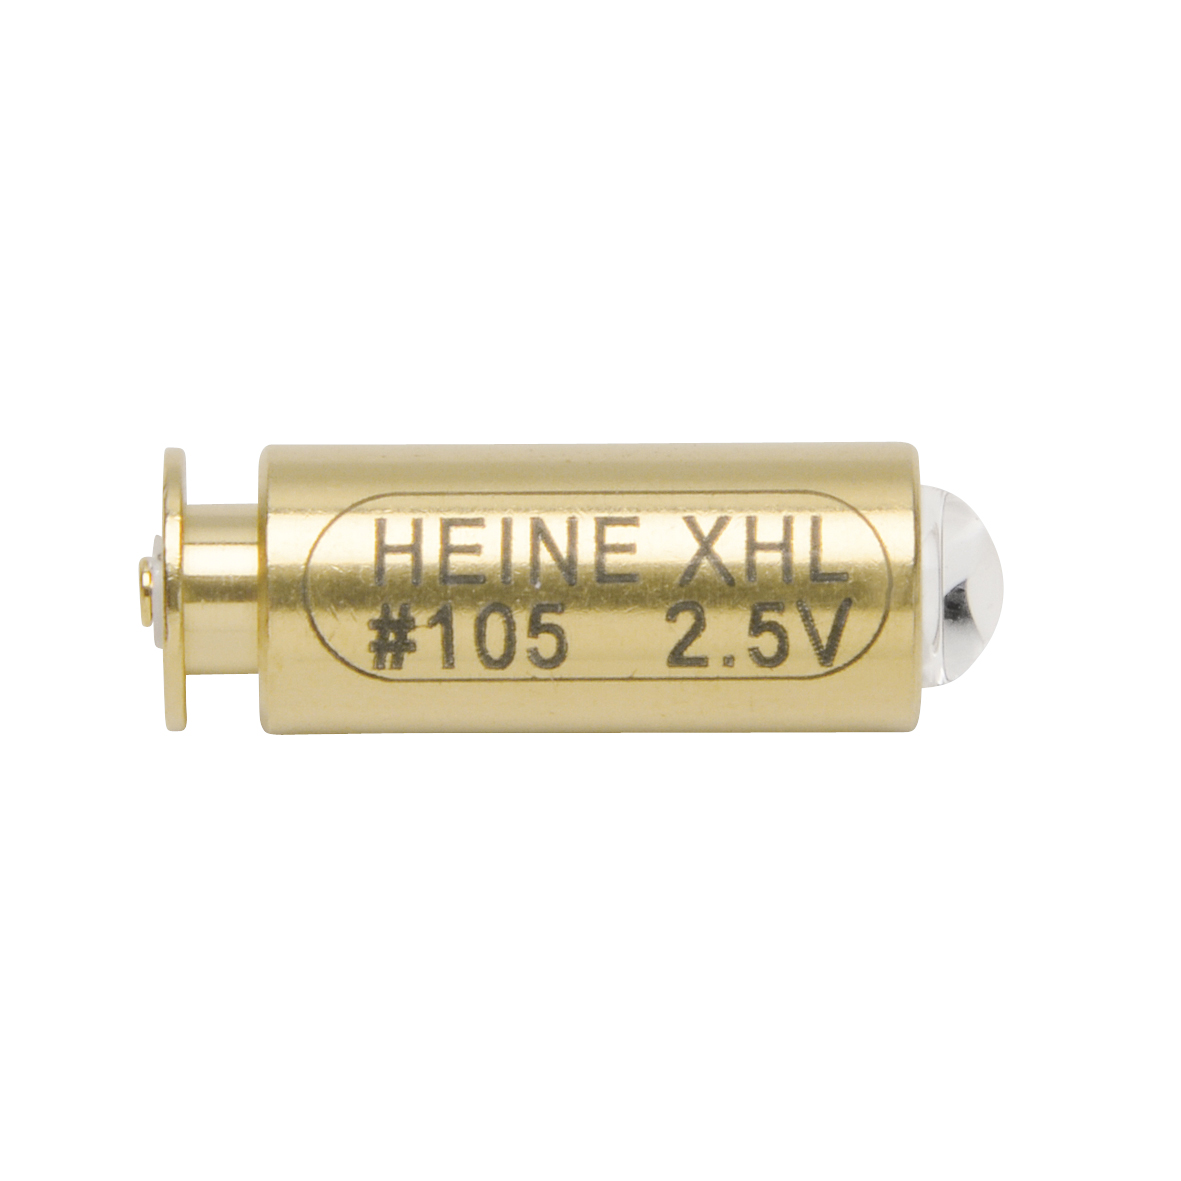 HEINE XHL Xénon ampoule halogène de rechange #105